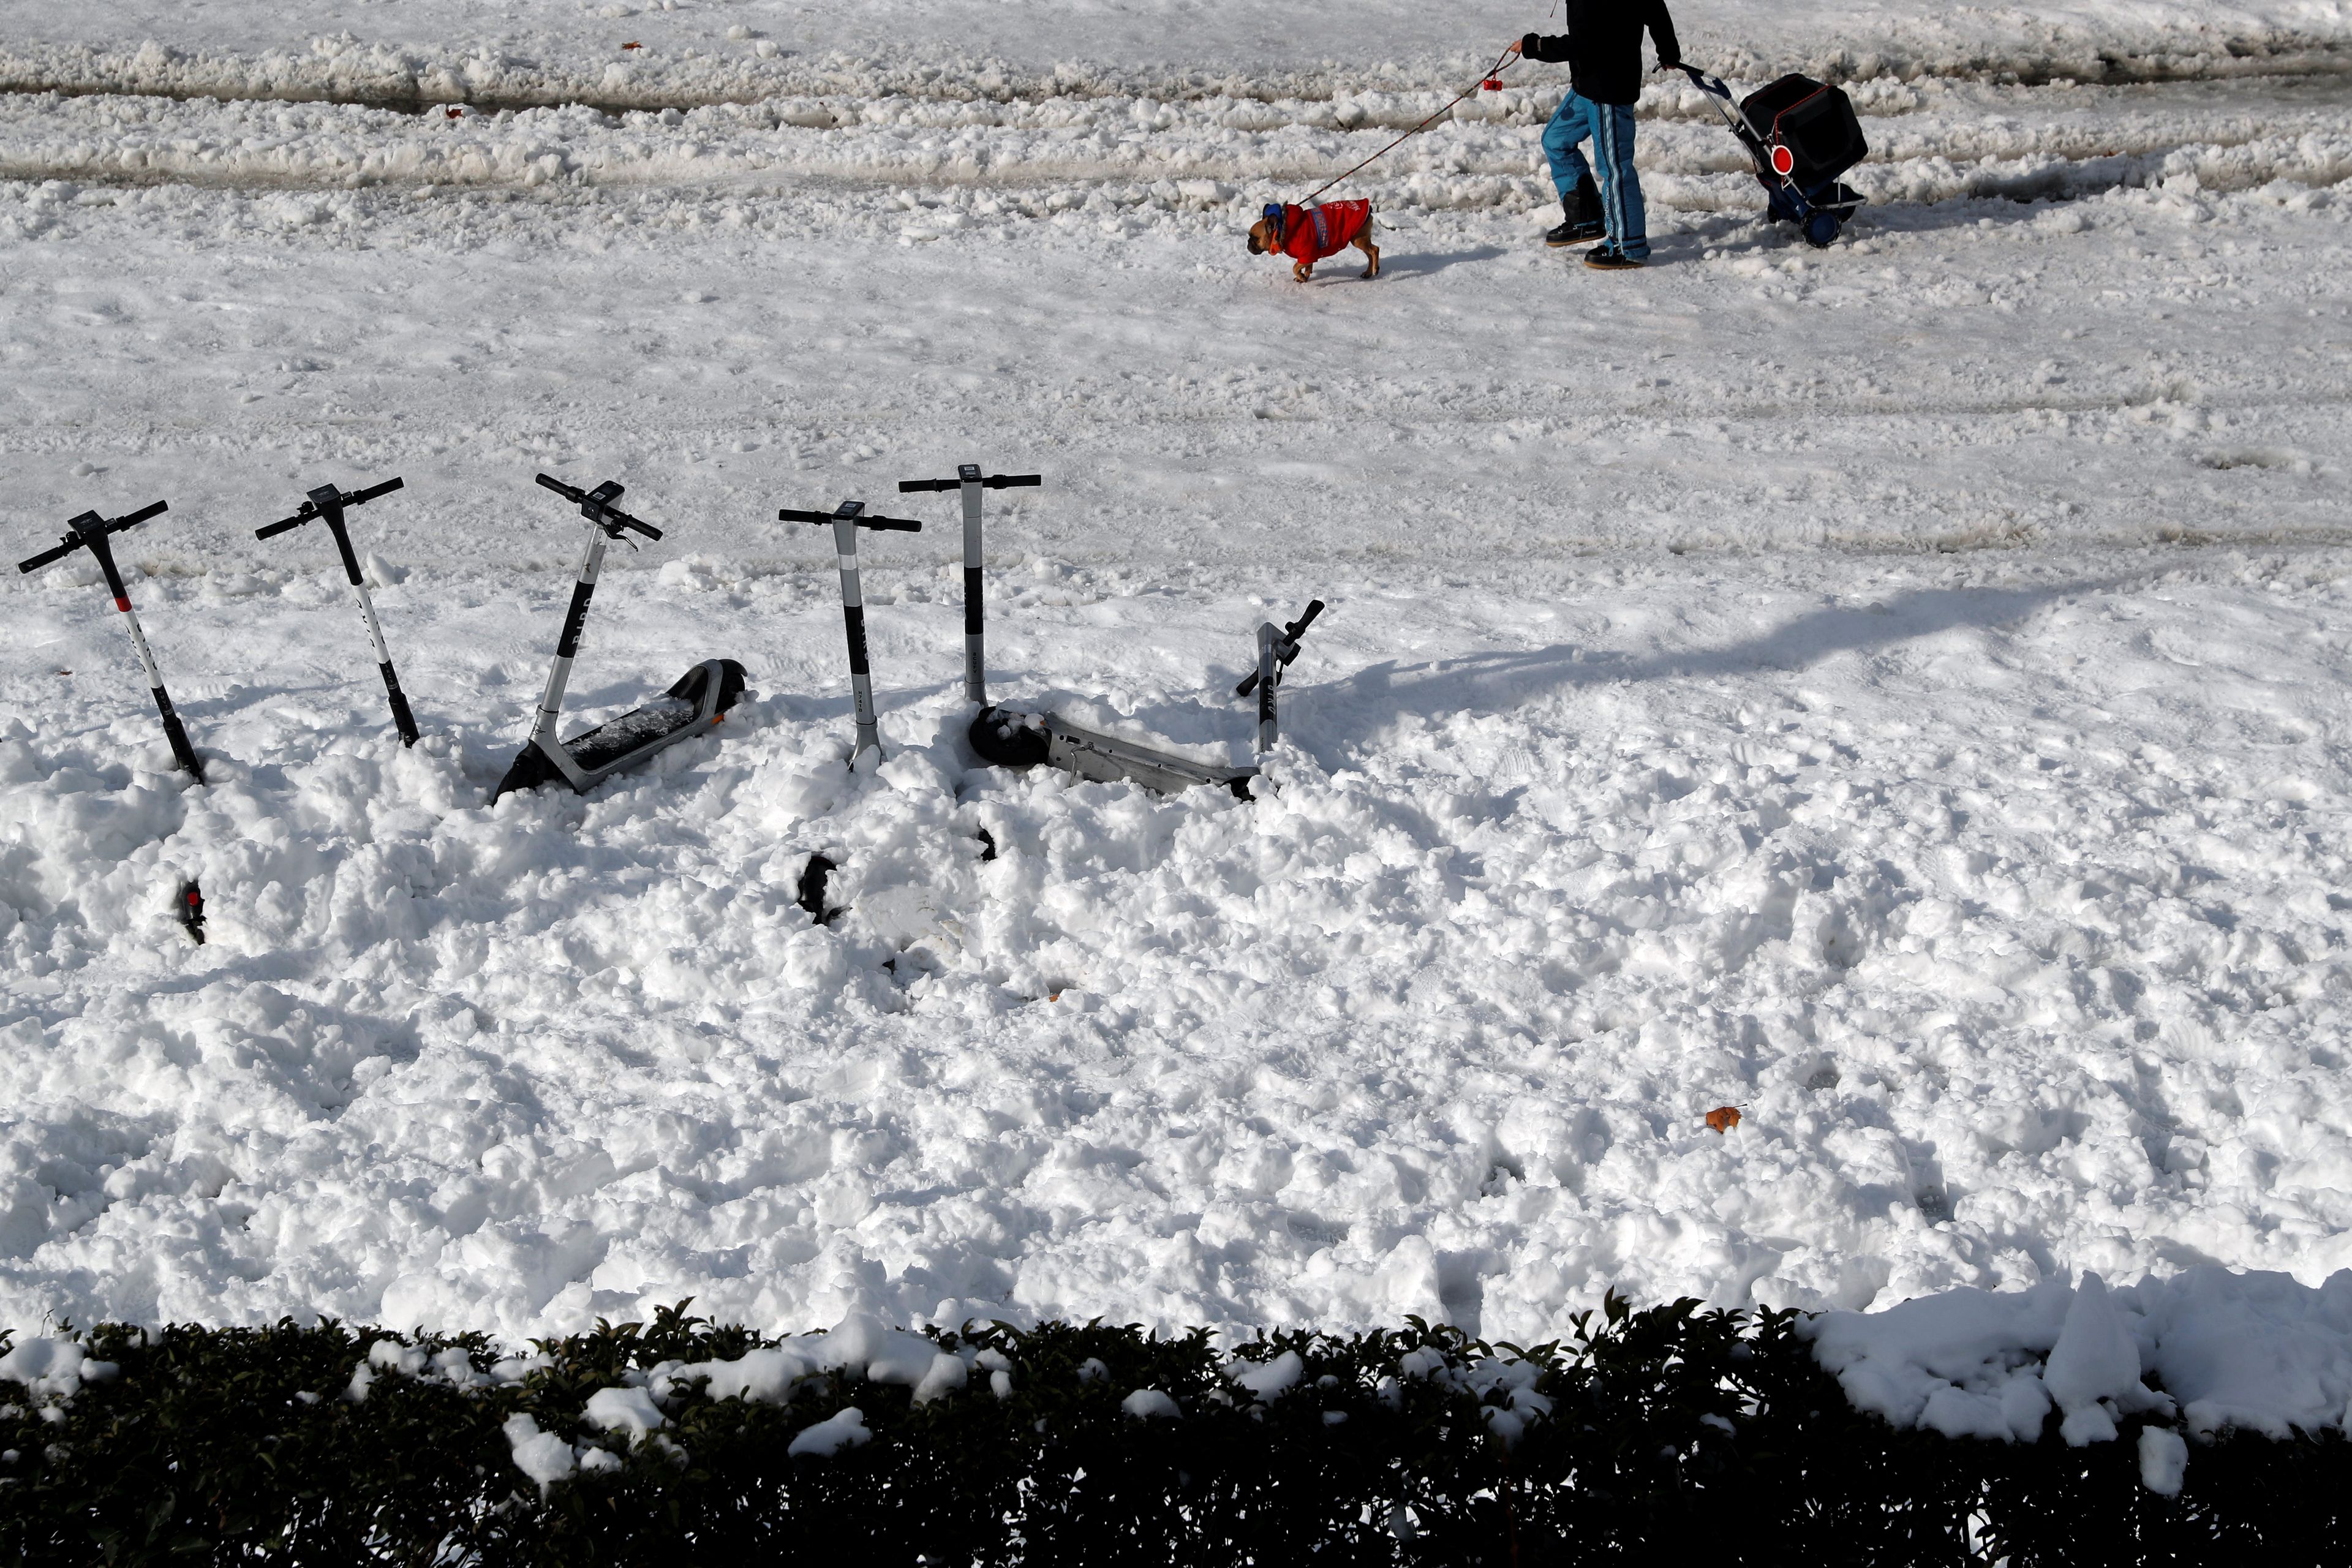 Patinetes enterrados en la nieve en Madrid durante la borrasca Filomena en enero de 2021.